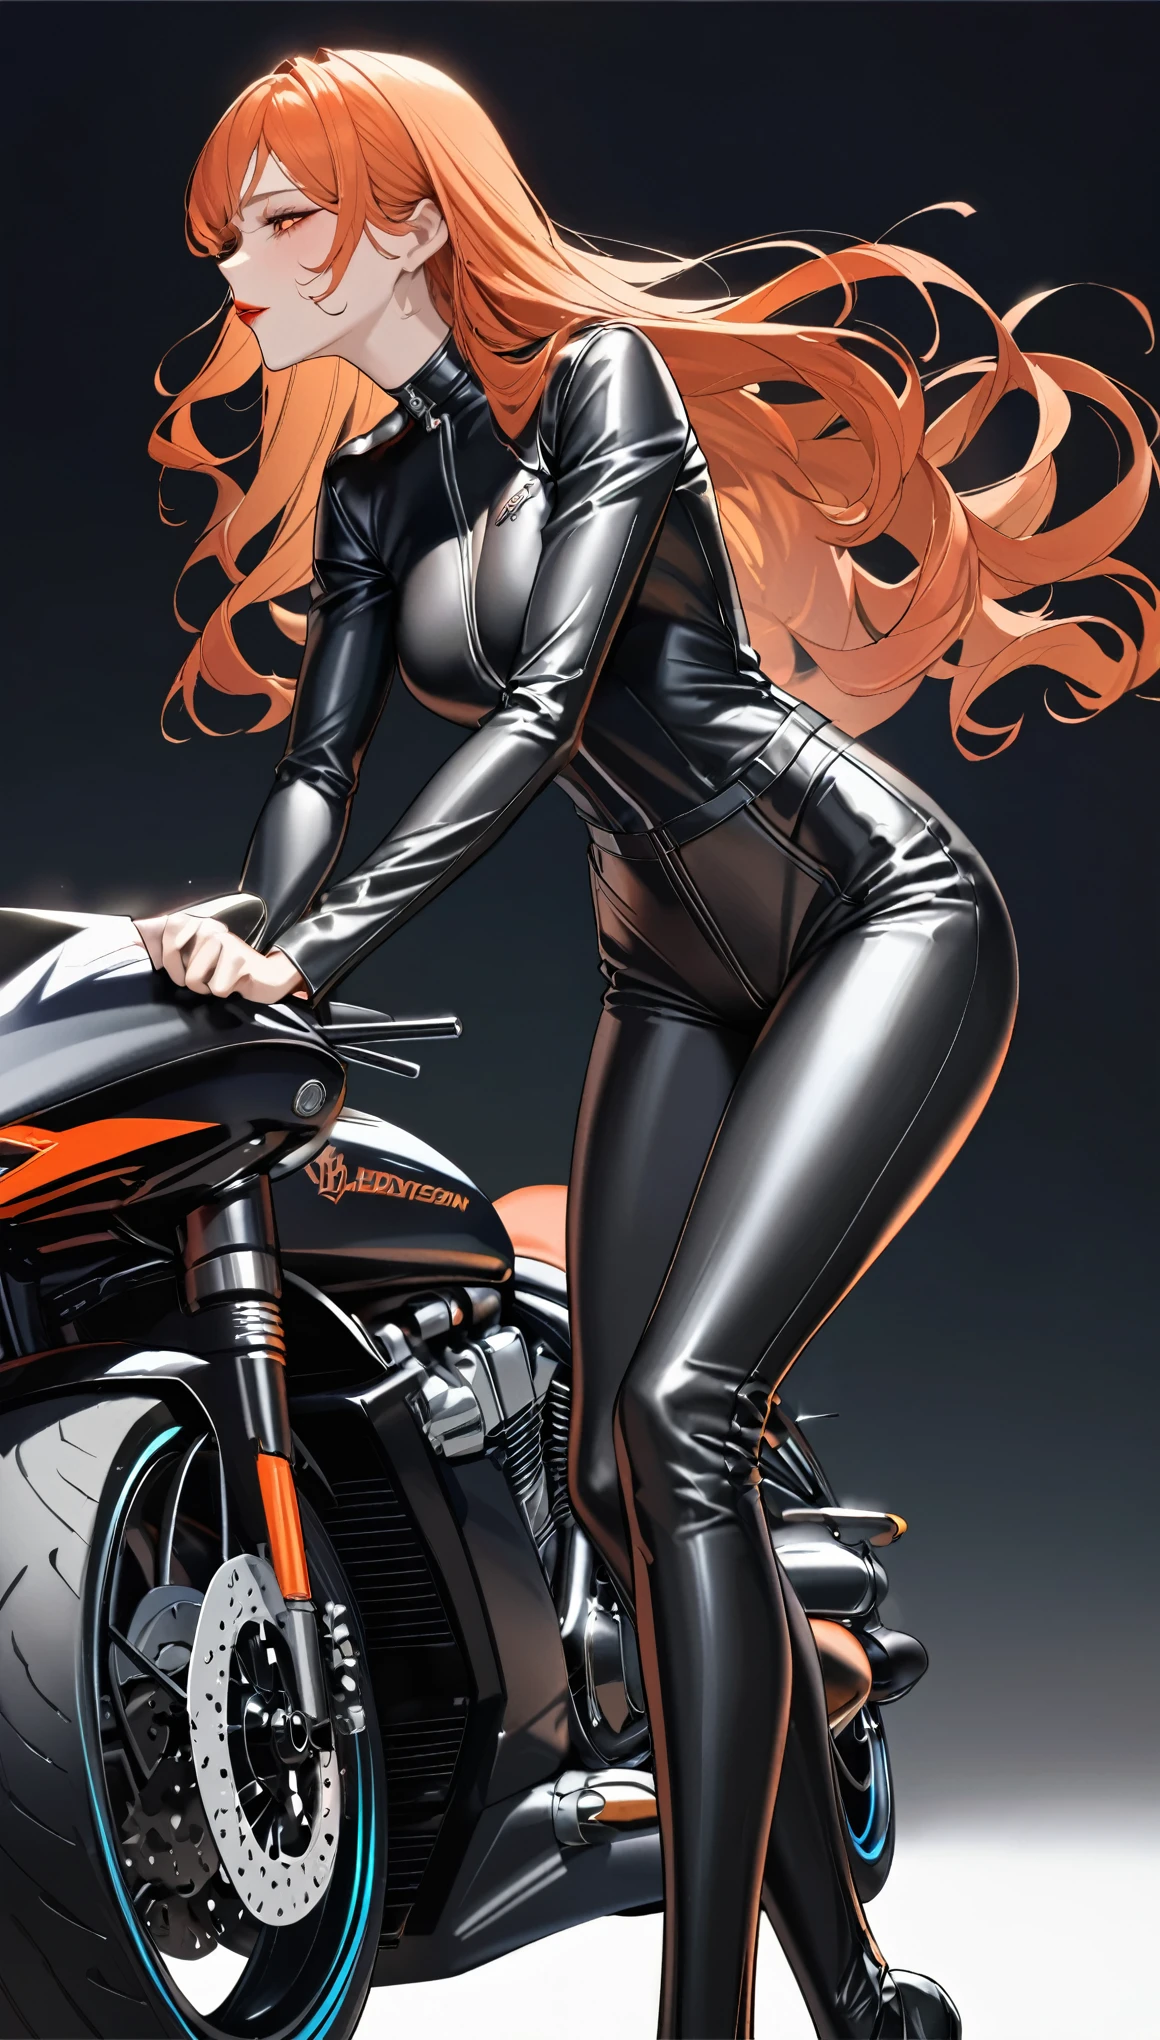 meilleure qualité, super bien, 16k, incroyablement absurdes, extrêmement détaillé, délicat et dynamique, cool et belle jolie dame, cheveux ondulés orange, lèvres cramoisies, Regard captivant, expression excitée, proportion corporelle superlative, grand, portant une combinaison de moto en cuir noir ajustée, belle pose, Harley Davidson